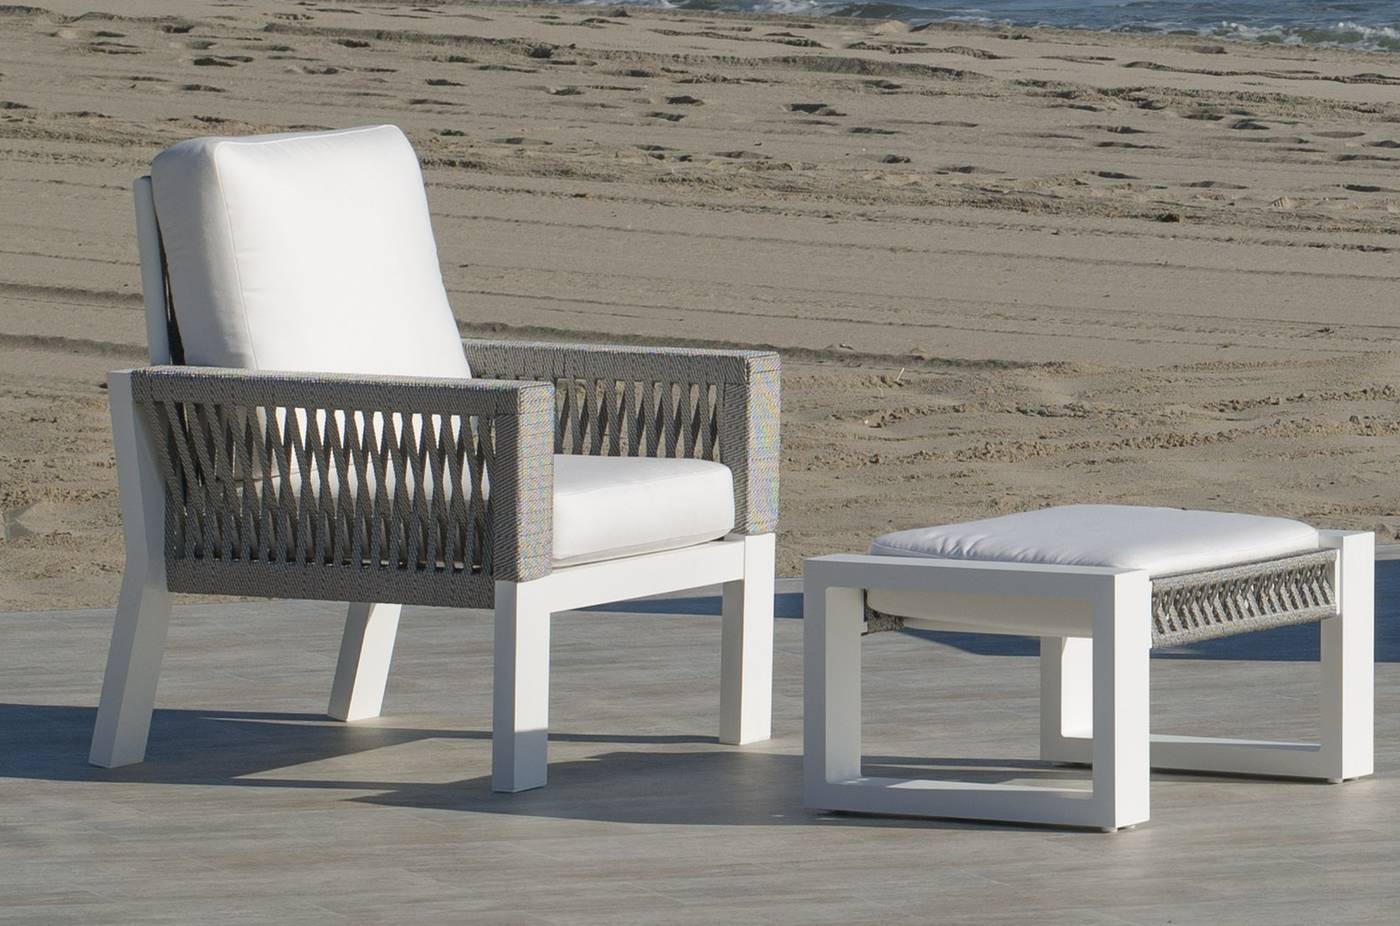 Set Aluminio Estambul-7 - Conjunto aluminio-cuerda: 1 sofá de 2 plazas + 2 sillones + 1 mesa de centro. Disponible en color blanco, gris, marrón o champagne.